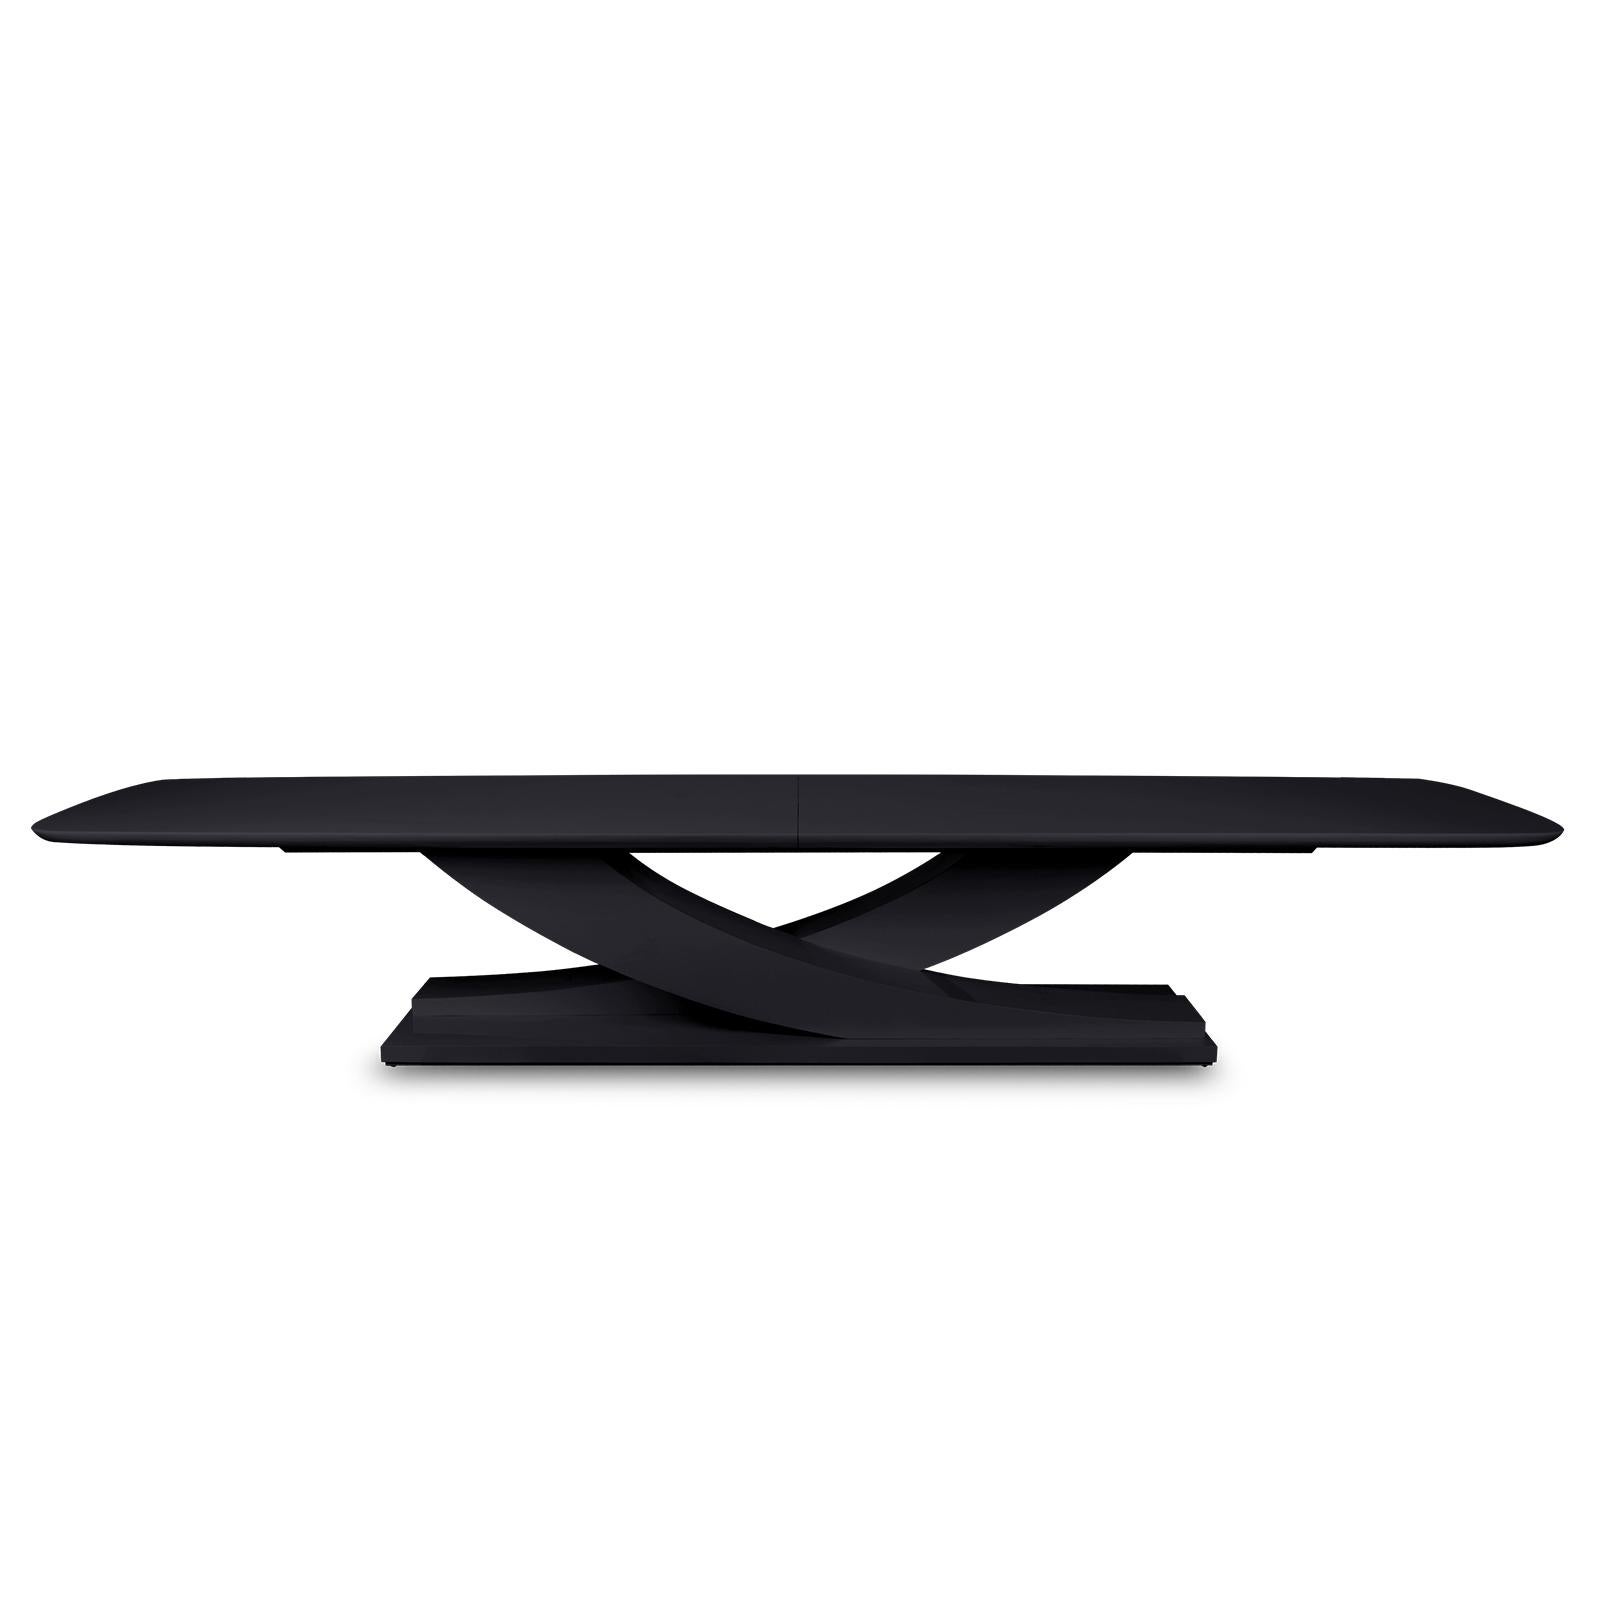 Esstisch Colisa mit Struktur aus massivem Mahagoni 
Holz, schwarz lackiert. Mit 2-teiliger Tischplatte.
Auch mit Mahagoniholz in tabakfarbener und schwarzer matter Ausführung erhältlich.
Erhältlich in:
L305xT110xH75cm, Preis: